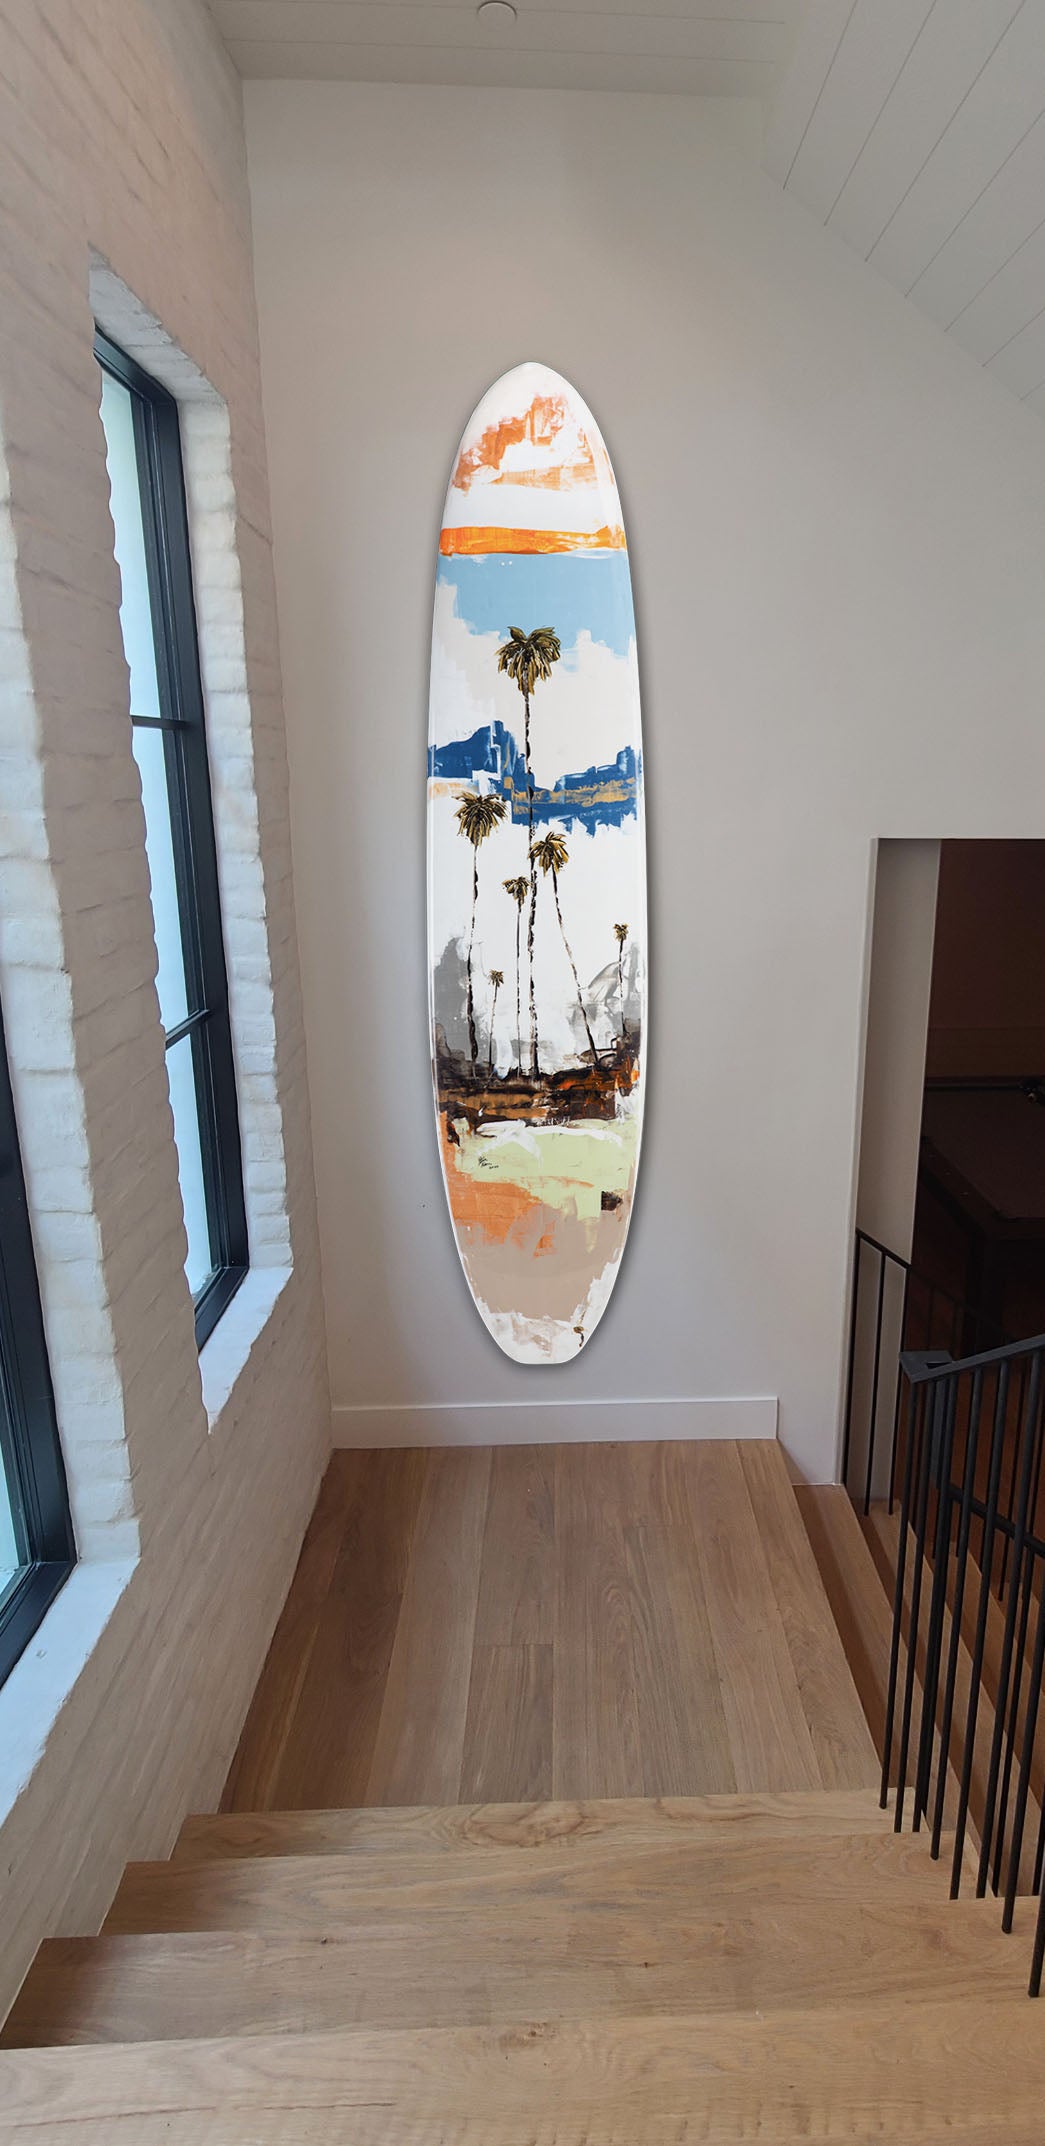 Ender Surfboard